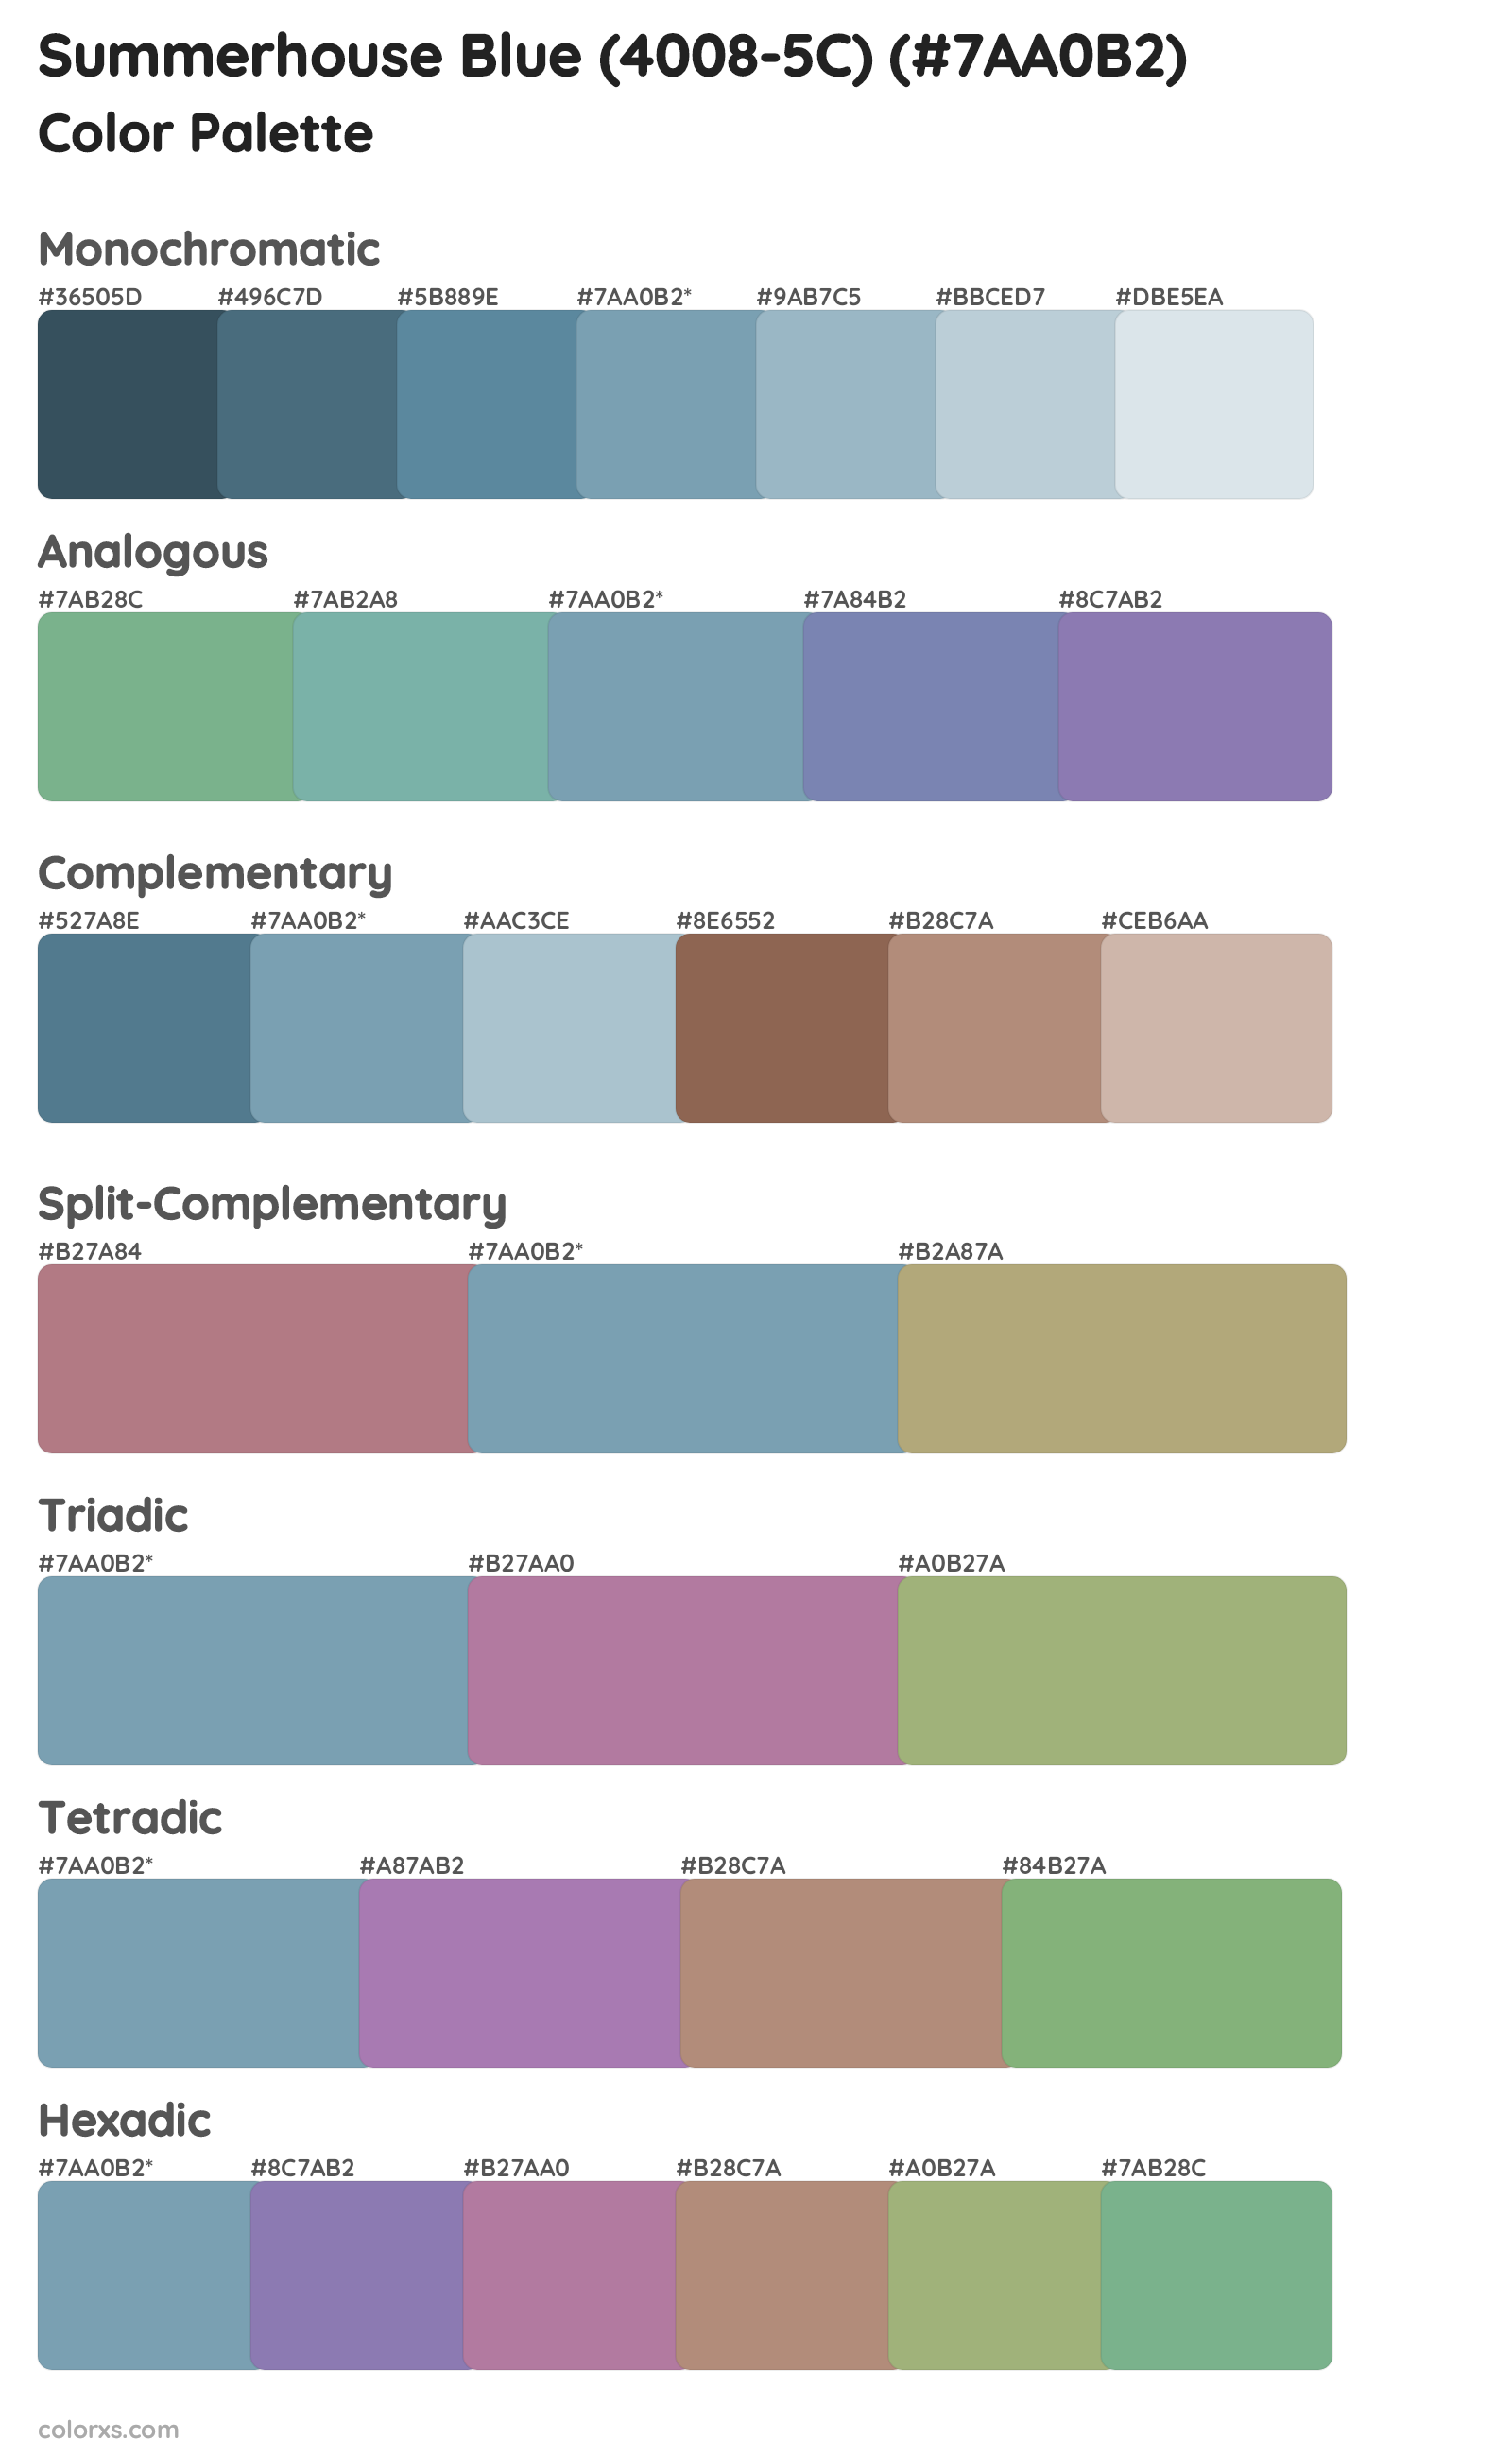 Summerhouse Blue (4008-5C) Color Scheme Palettes